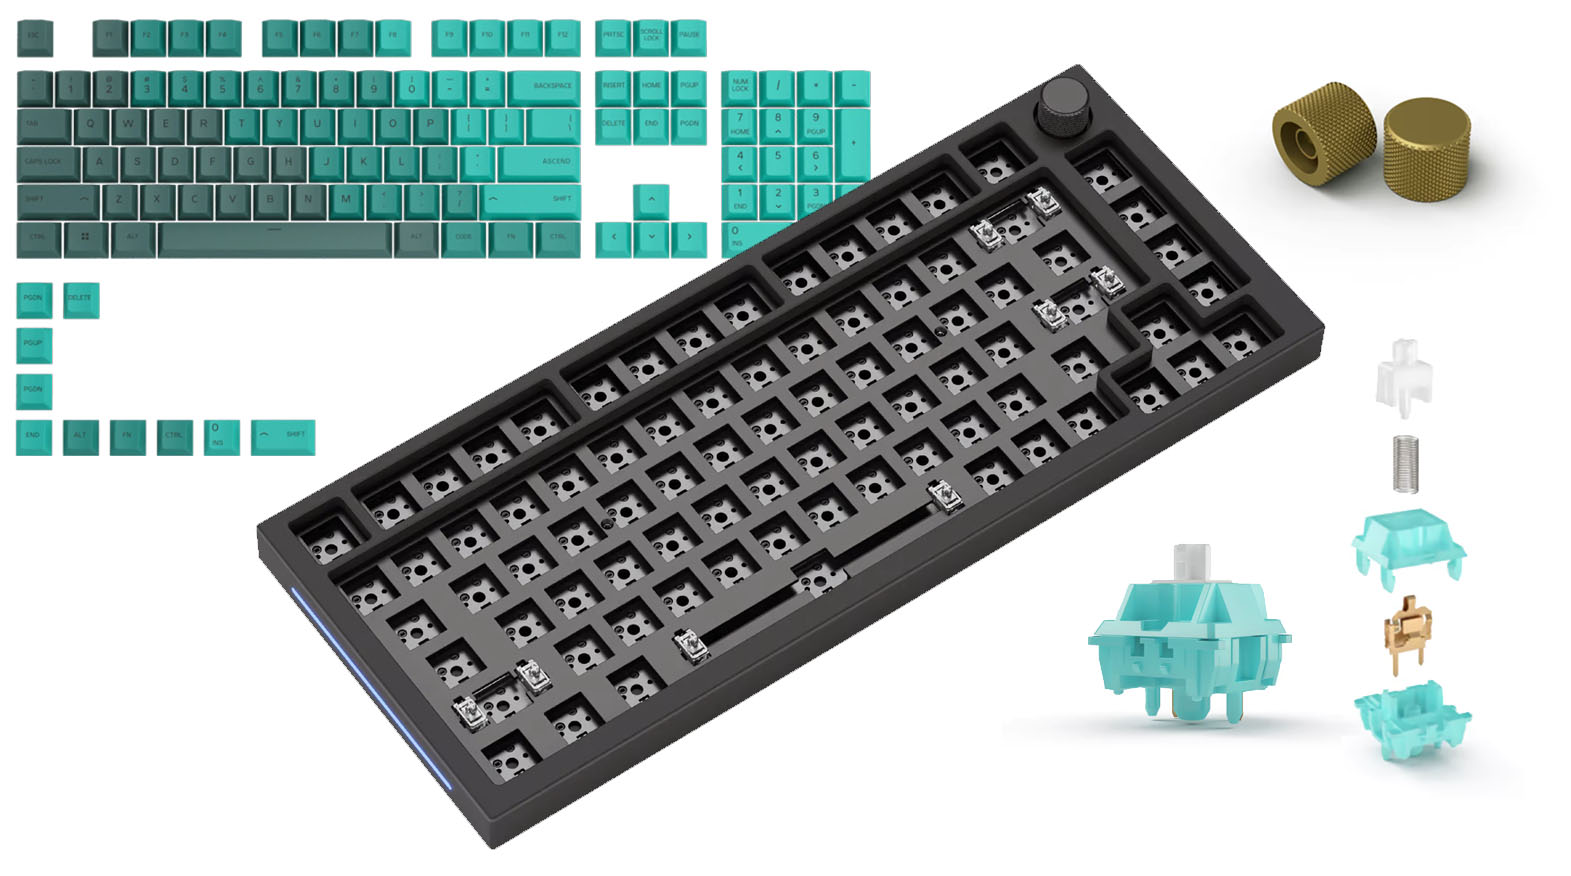 Custom tangentbord ISO, Nordic layout med lynxbrytare och rain forest keycaps.